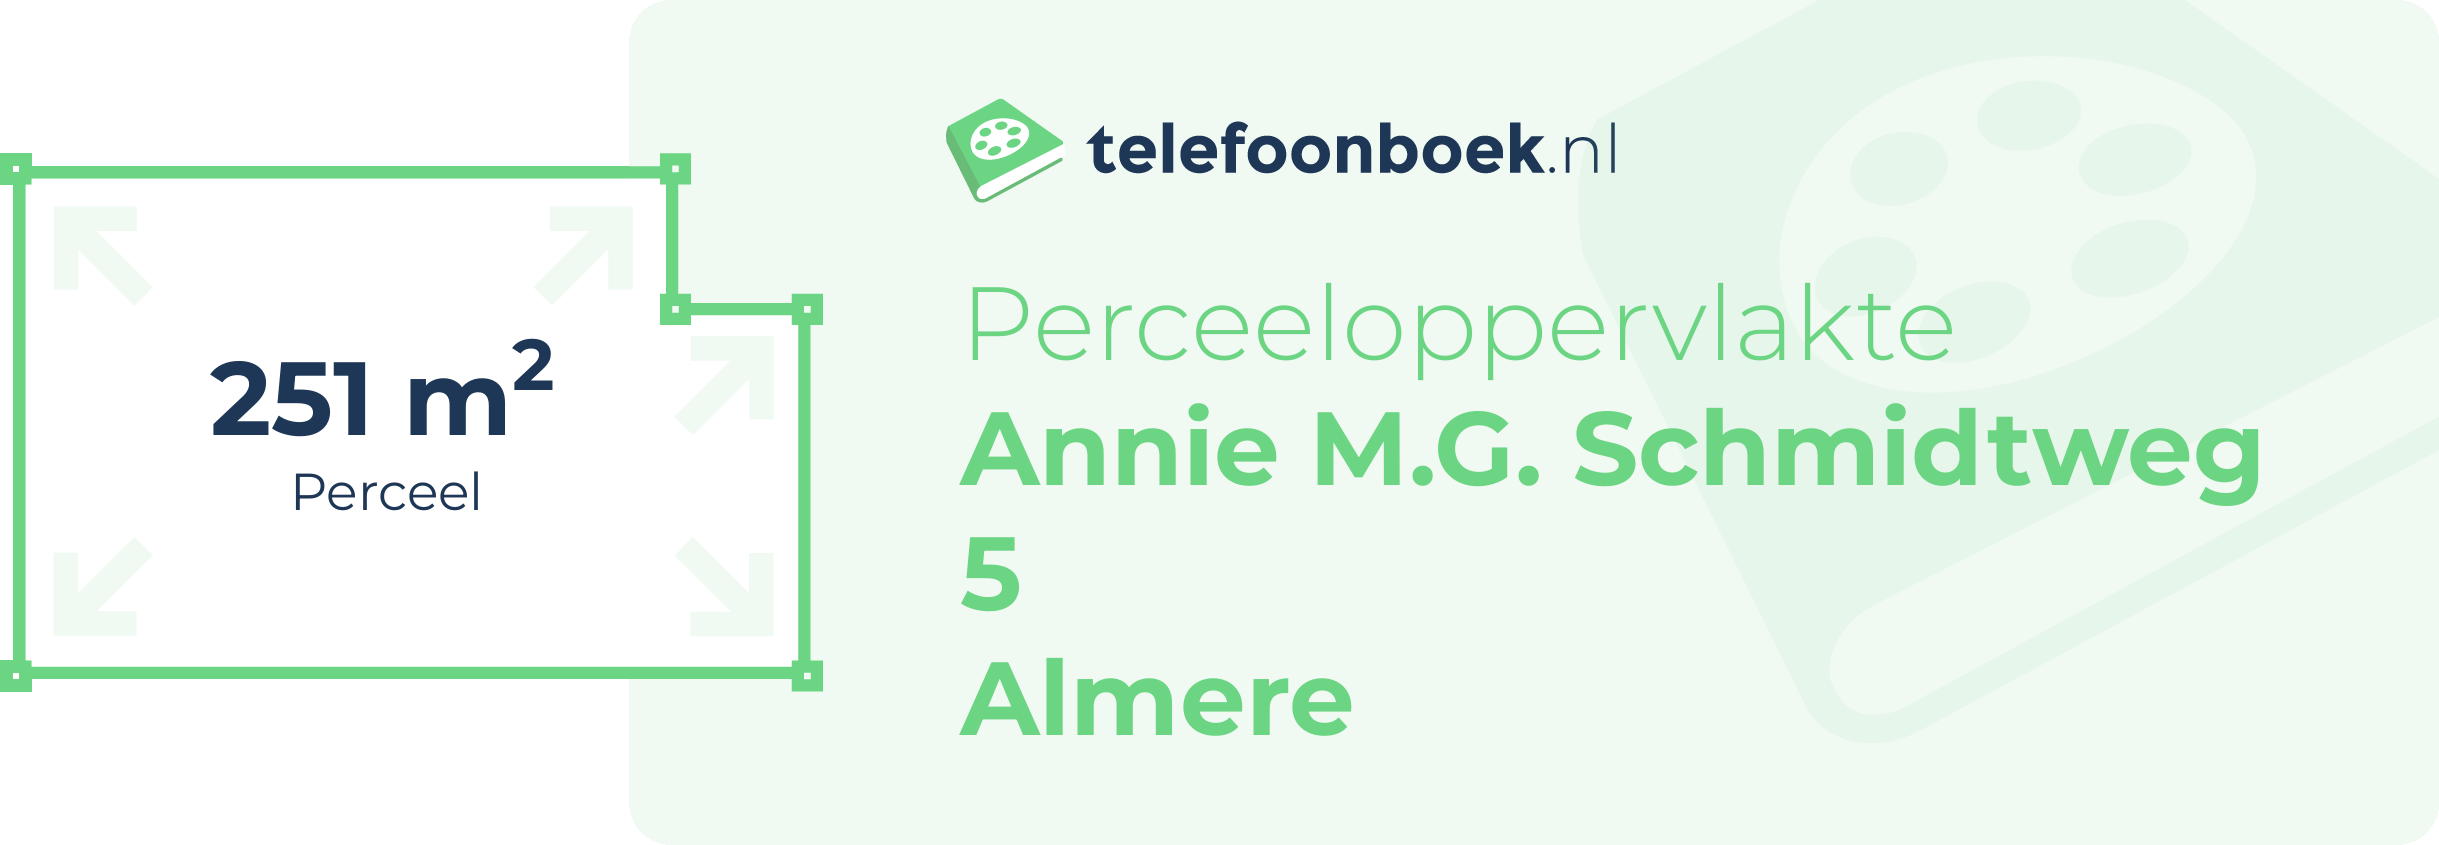 Perceeloppervlakte Annie M.G. Schmidtweg 5 Almere